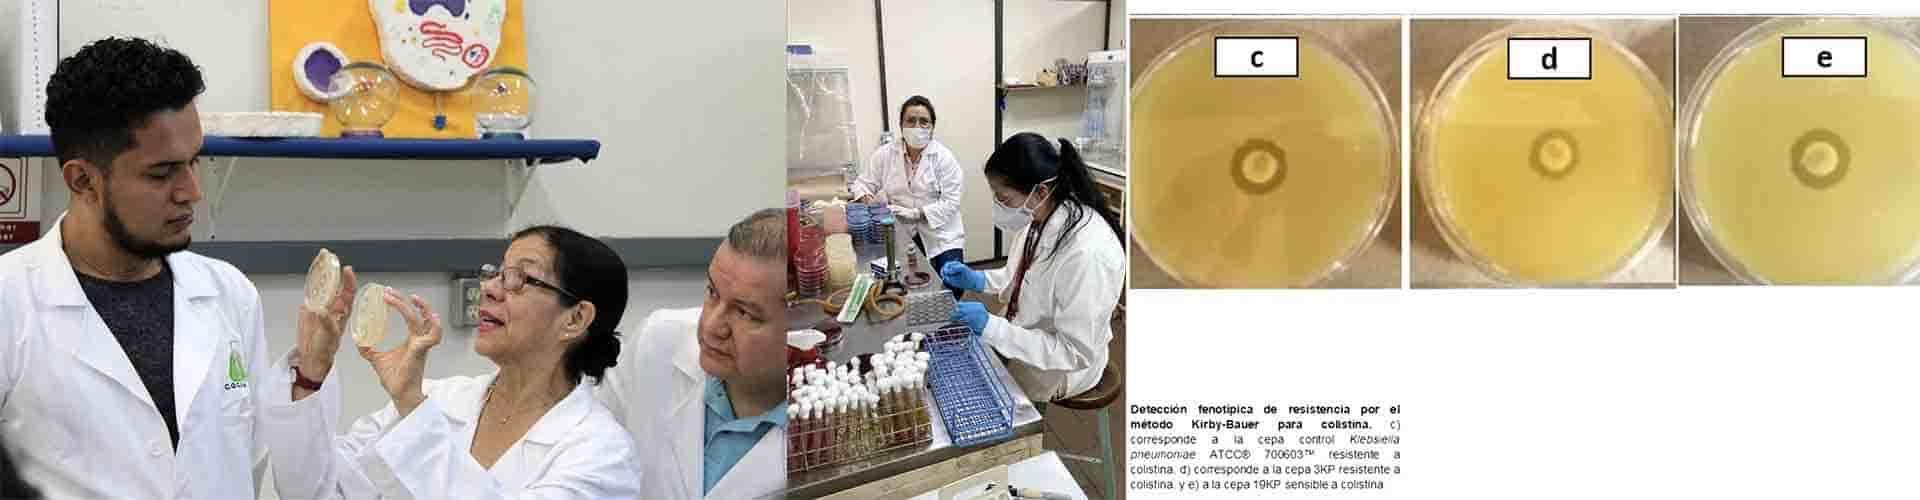 Detectan especialistas bacterias difíciles de combatir